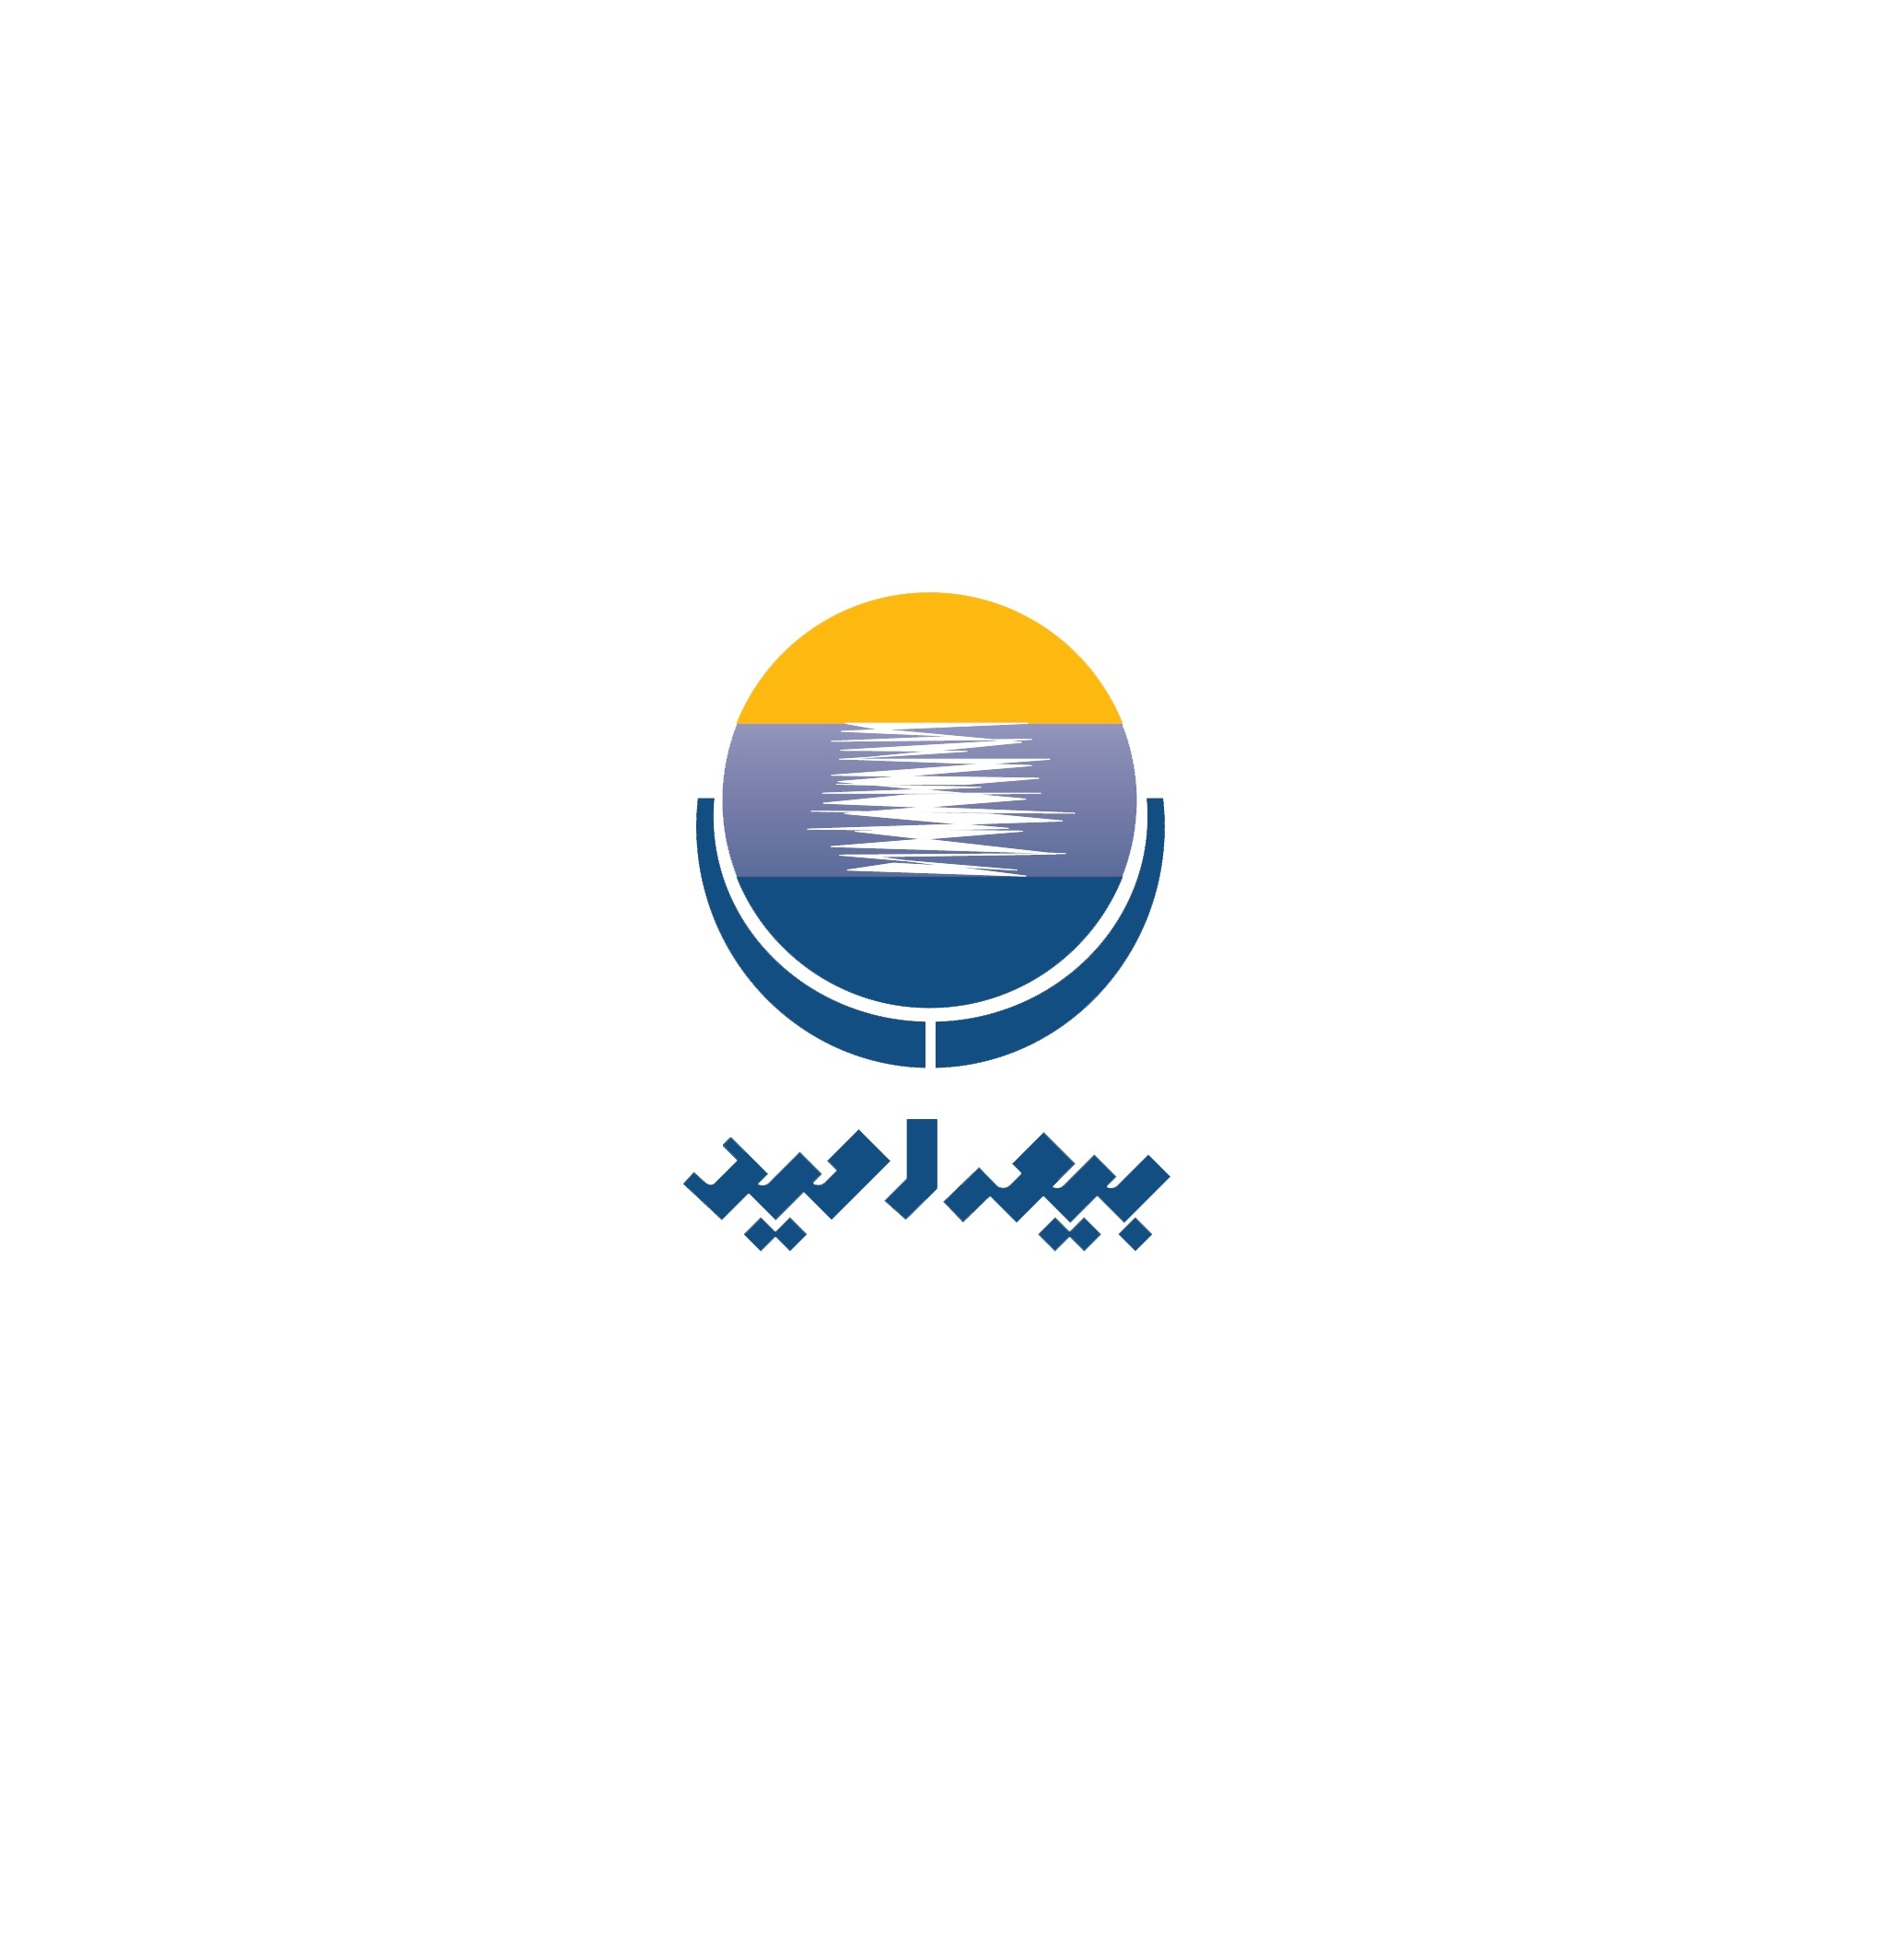 اطلاعیه : تغییر محل شعبه بوشهر به عسلویه